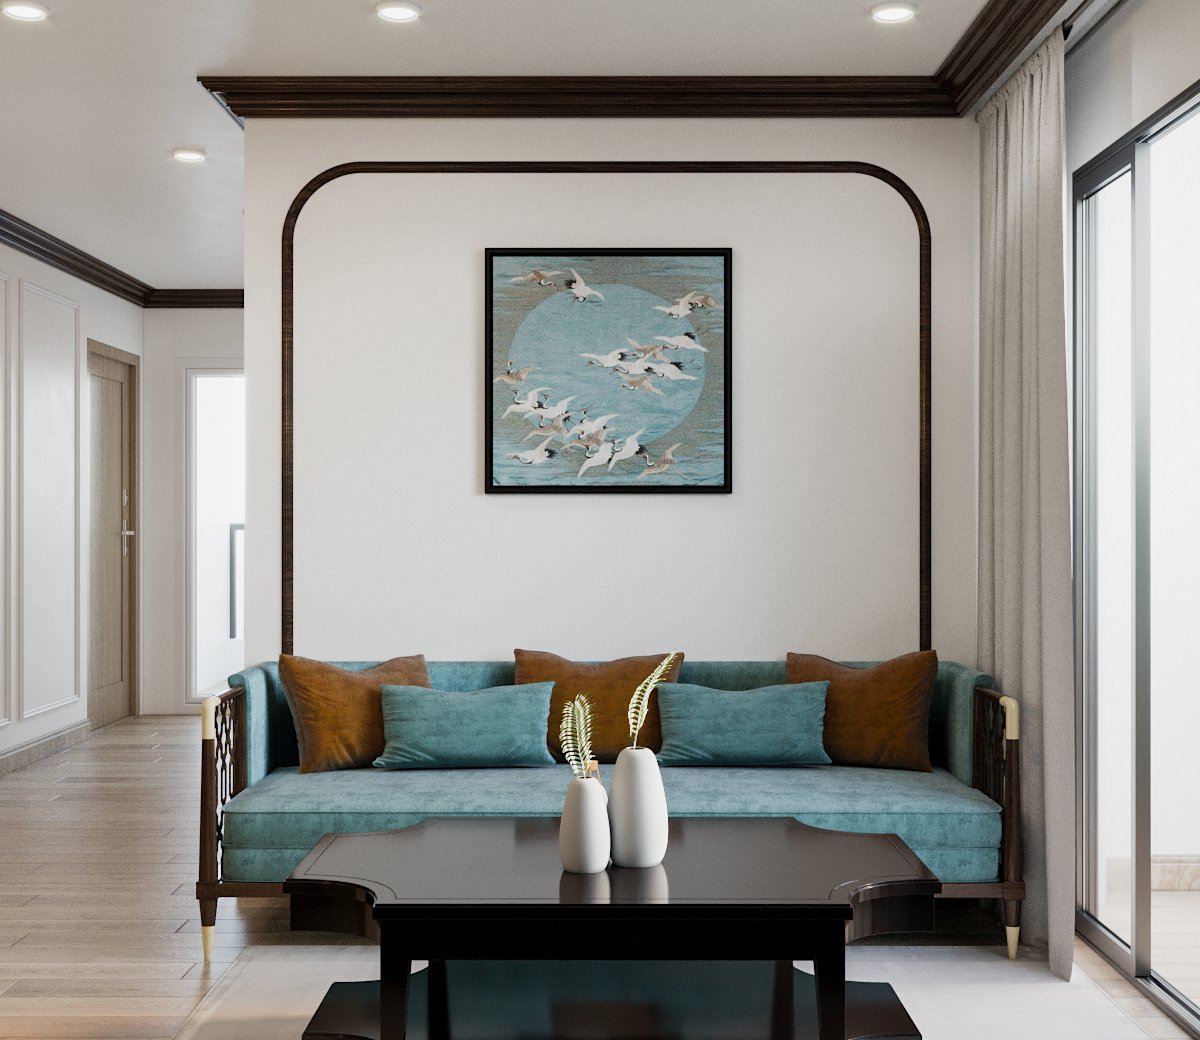 Phòng khách Indochine gọn đẹp, thoáng sáng với ghế sofa đệm màu xanh lam nhẹ nhàng cùng tông bức tranh tường phía sau, kết hợp hài hòa bàn trà gỗ màu đen sang trọng.